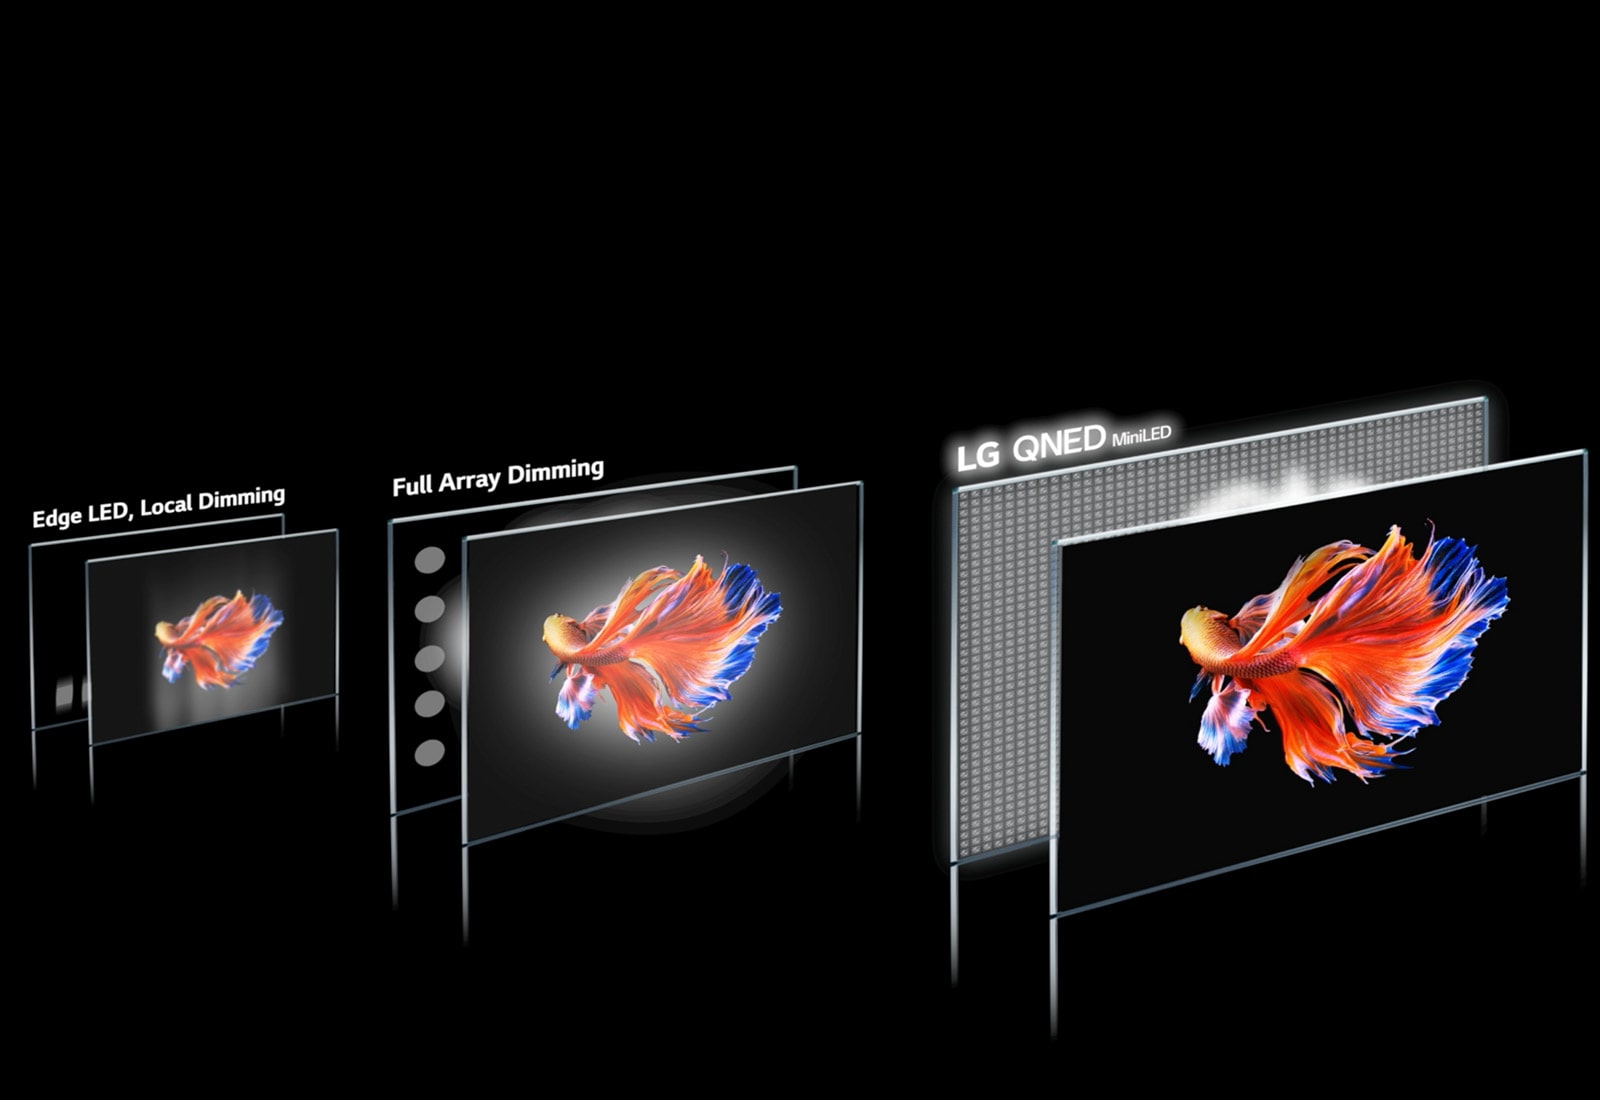 Slika tehnologije choke cone in siamske borbene ribe na črnem ozadju na 3 različnih zaslonih.  Slika na modelu LG QNED Mini LED je najjasnejša in ima najmanj sijajev ter svetlejše barve (predvajaj video).